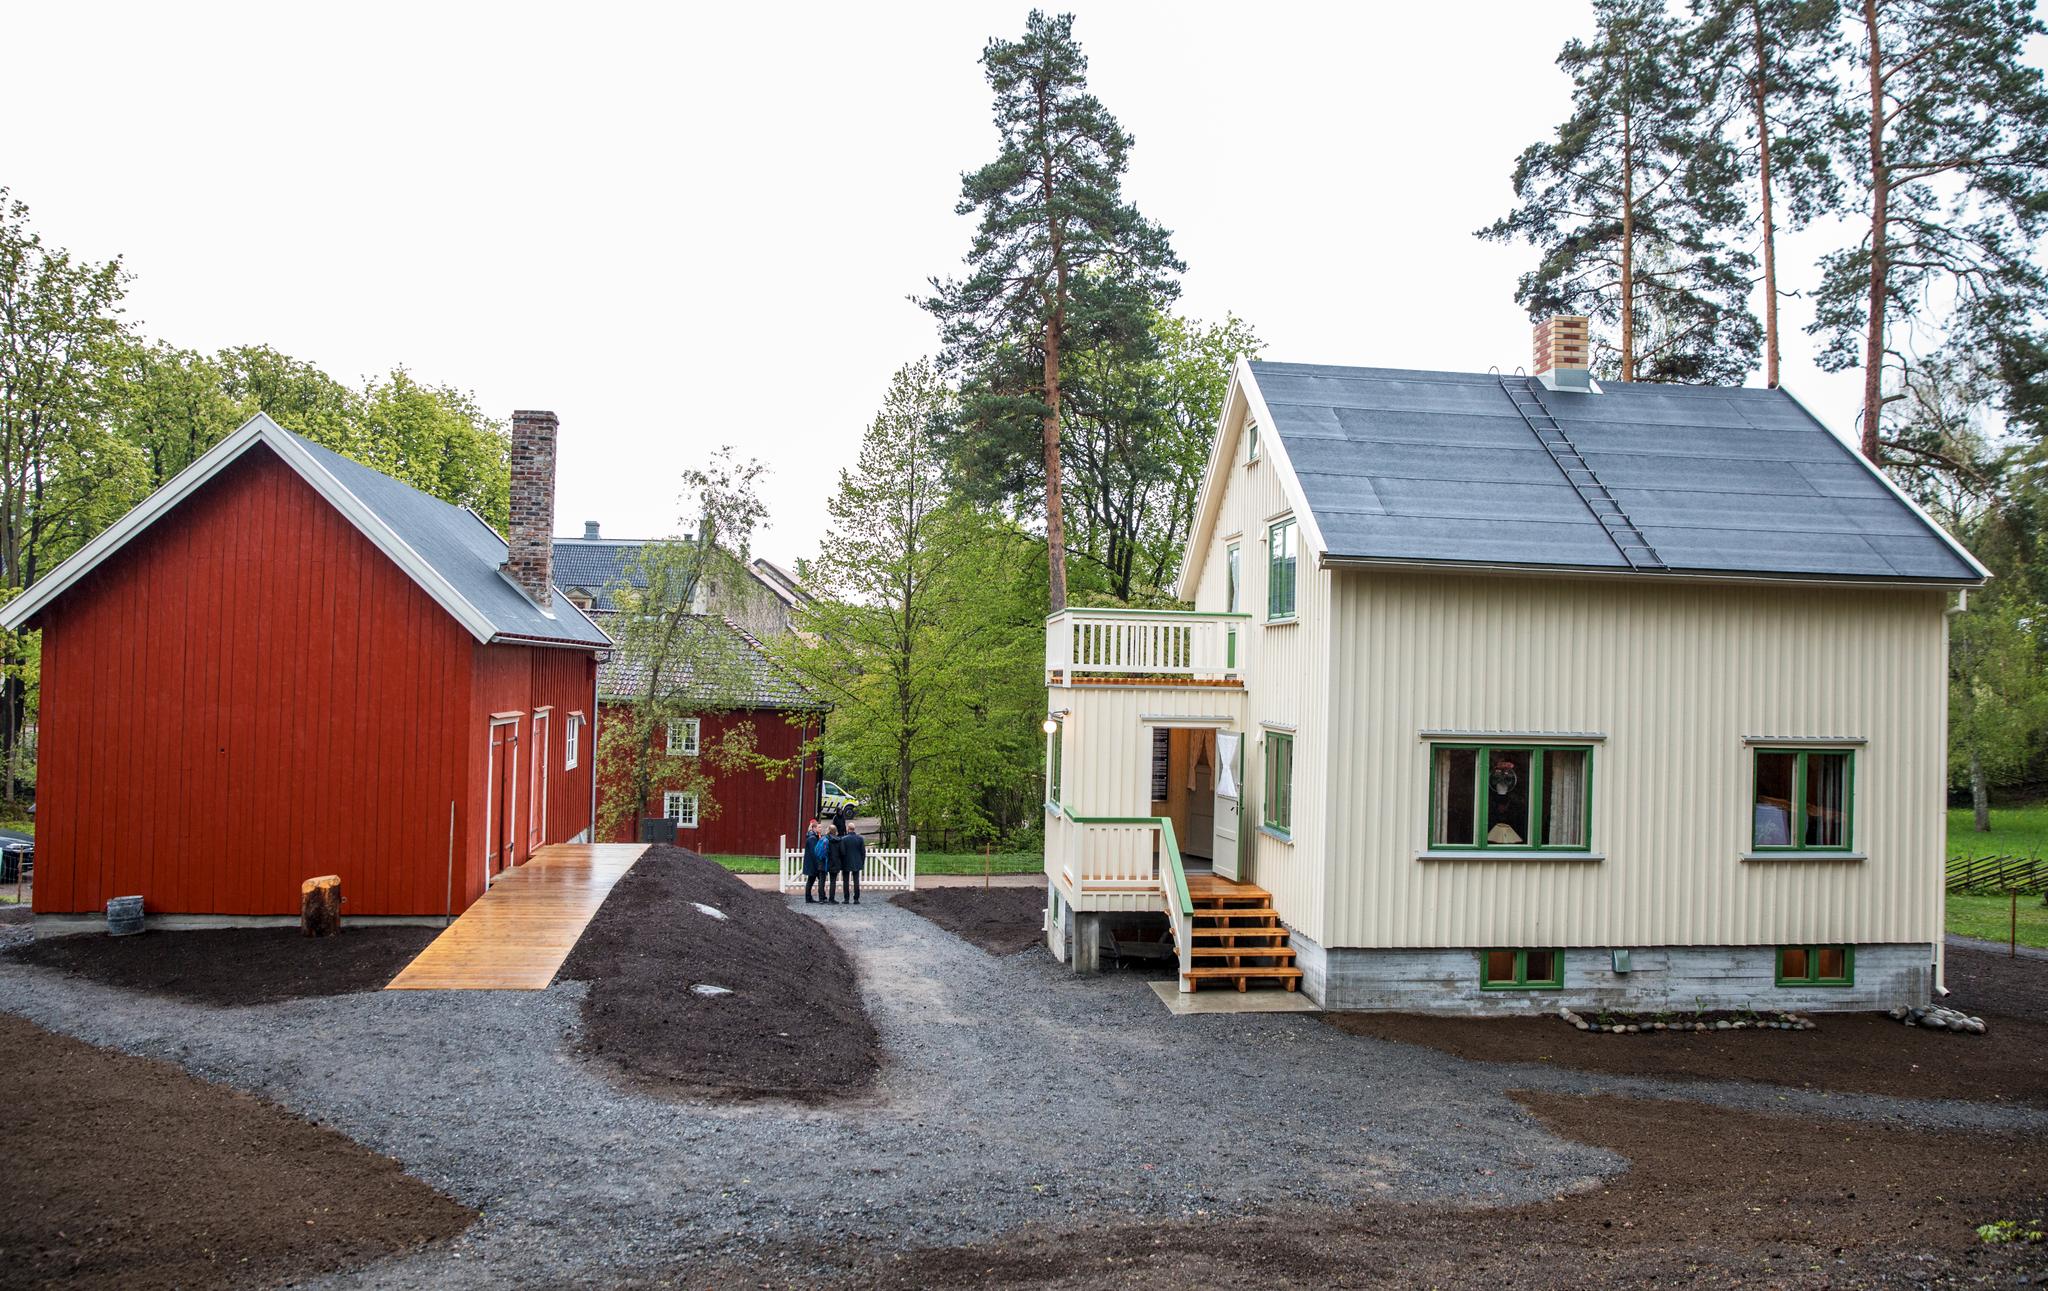 Slik ser husene ut i sine nye omgivelser. Til helgen blir det mulig å høre historien om husene og om prosjektet med å flytte dem fra Porsanger til Oslo. 